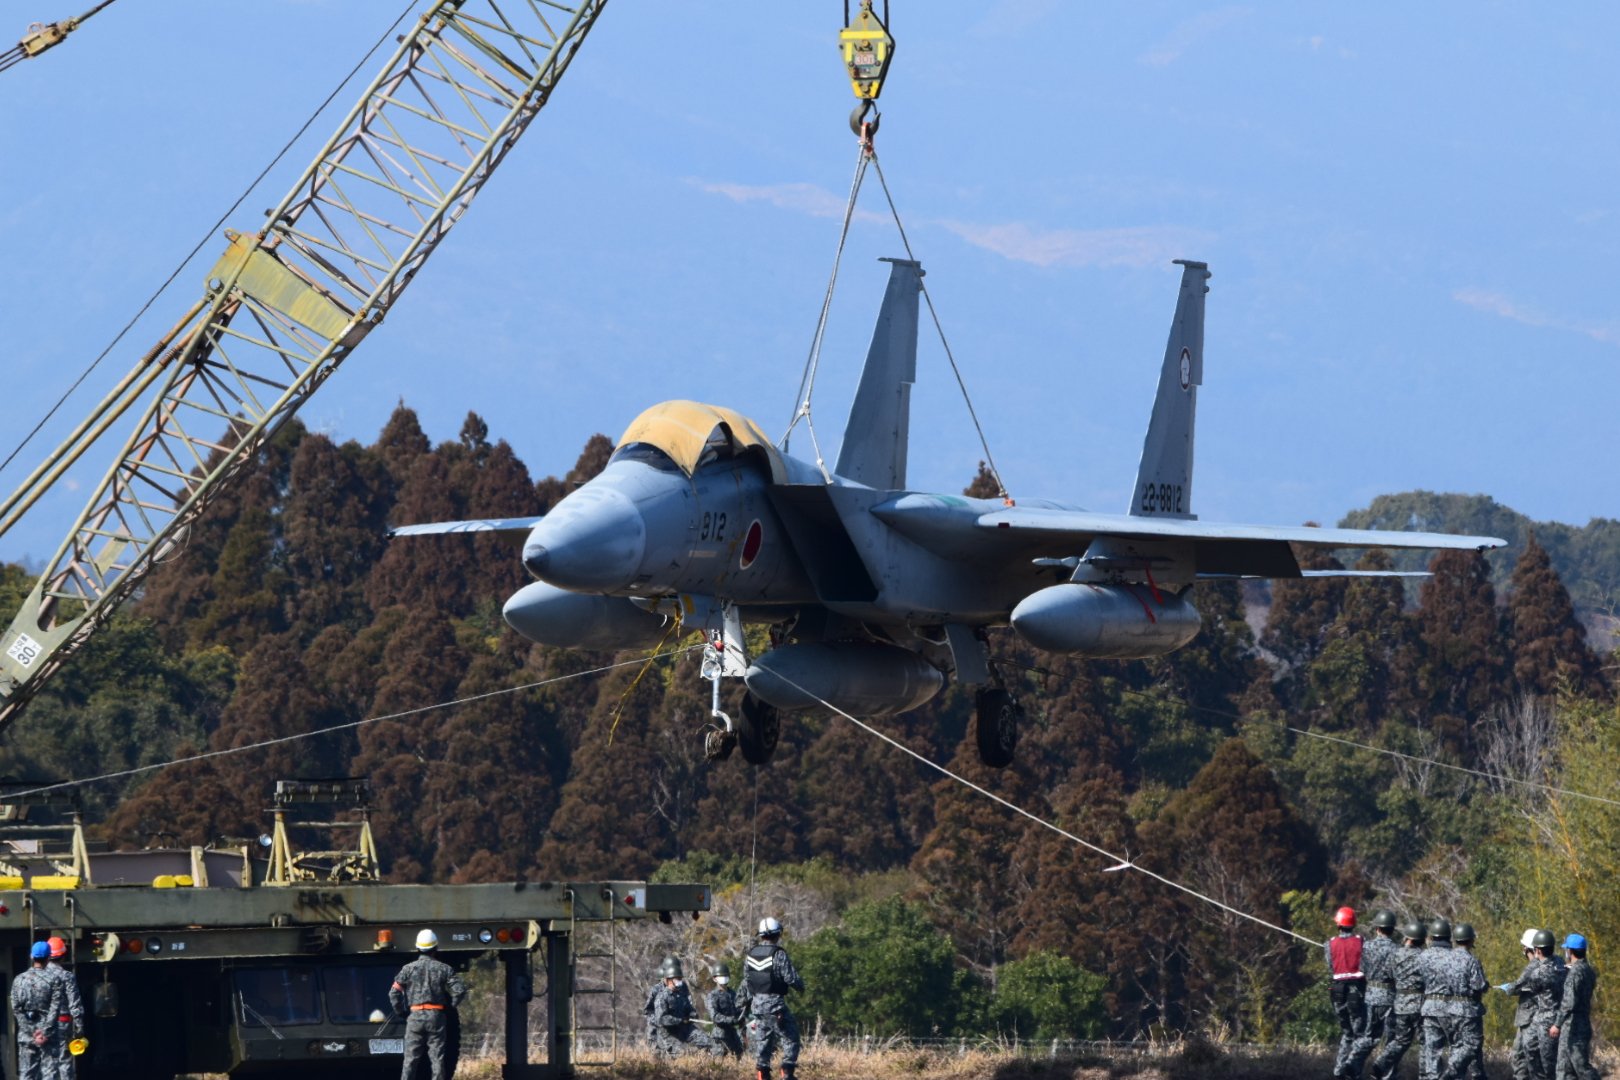 Повстання літаків: японський винищувач F-15J хотів утекти з авіабази під час тривоги